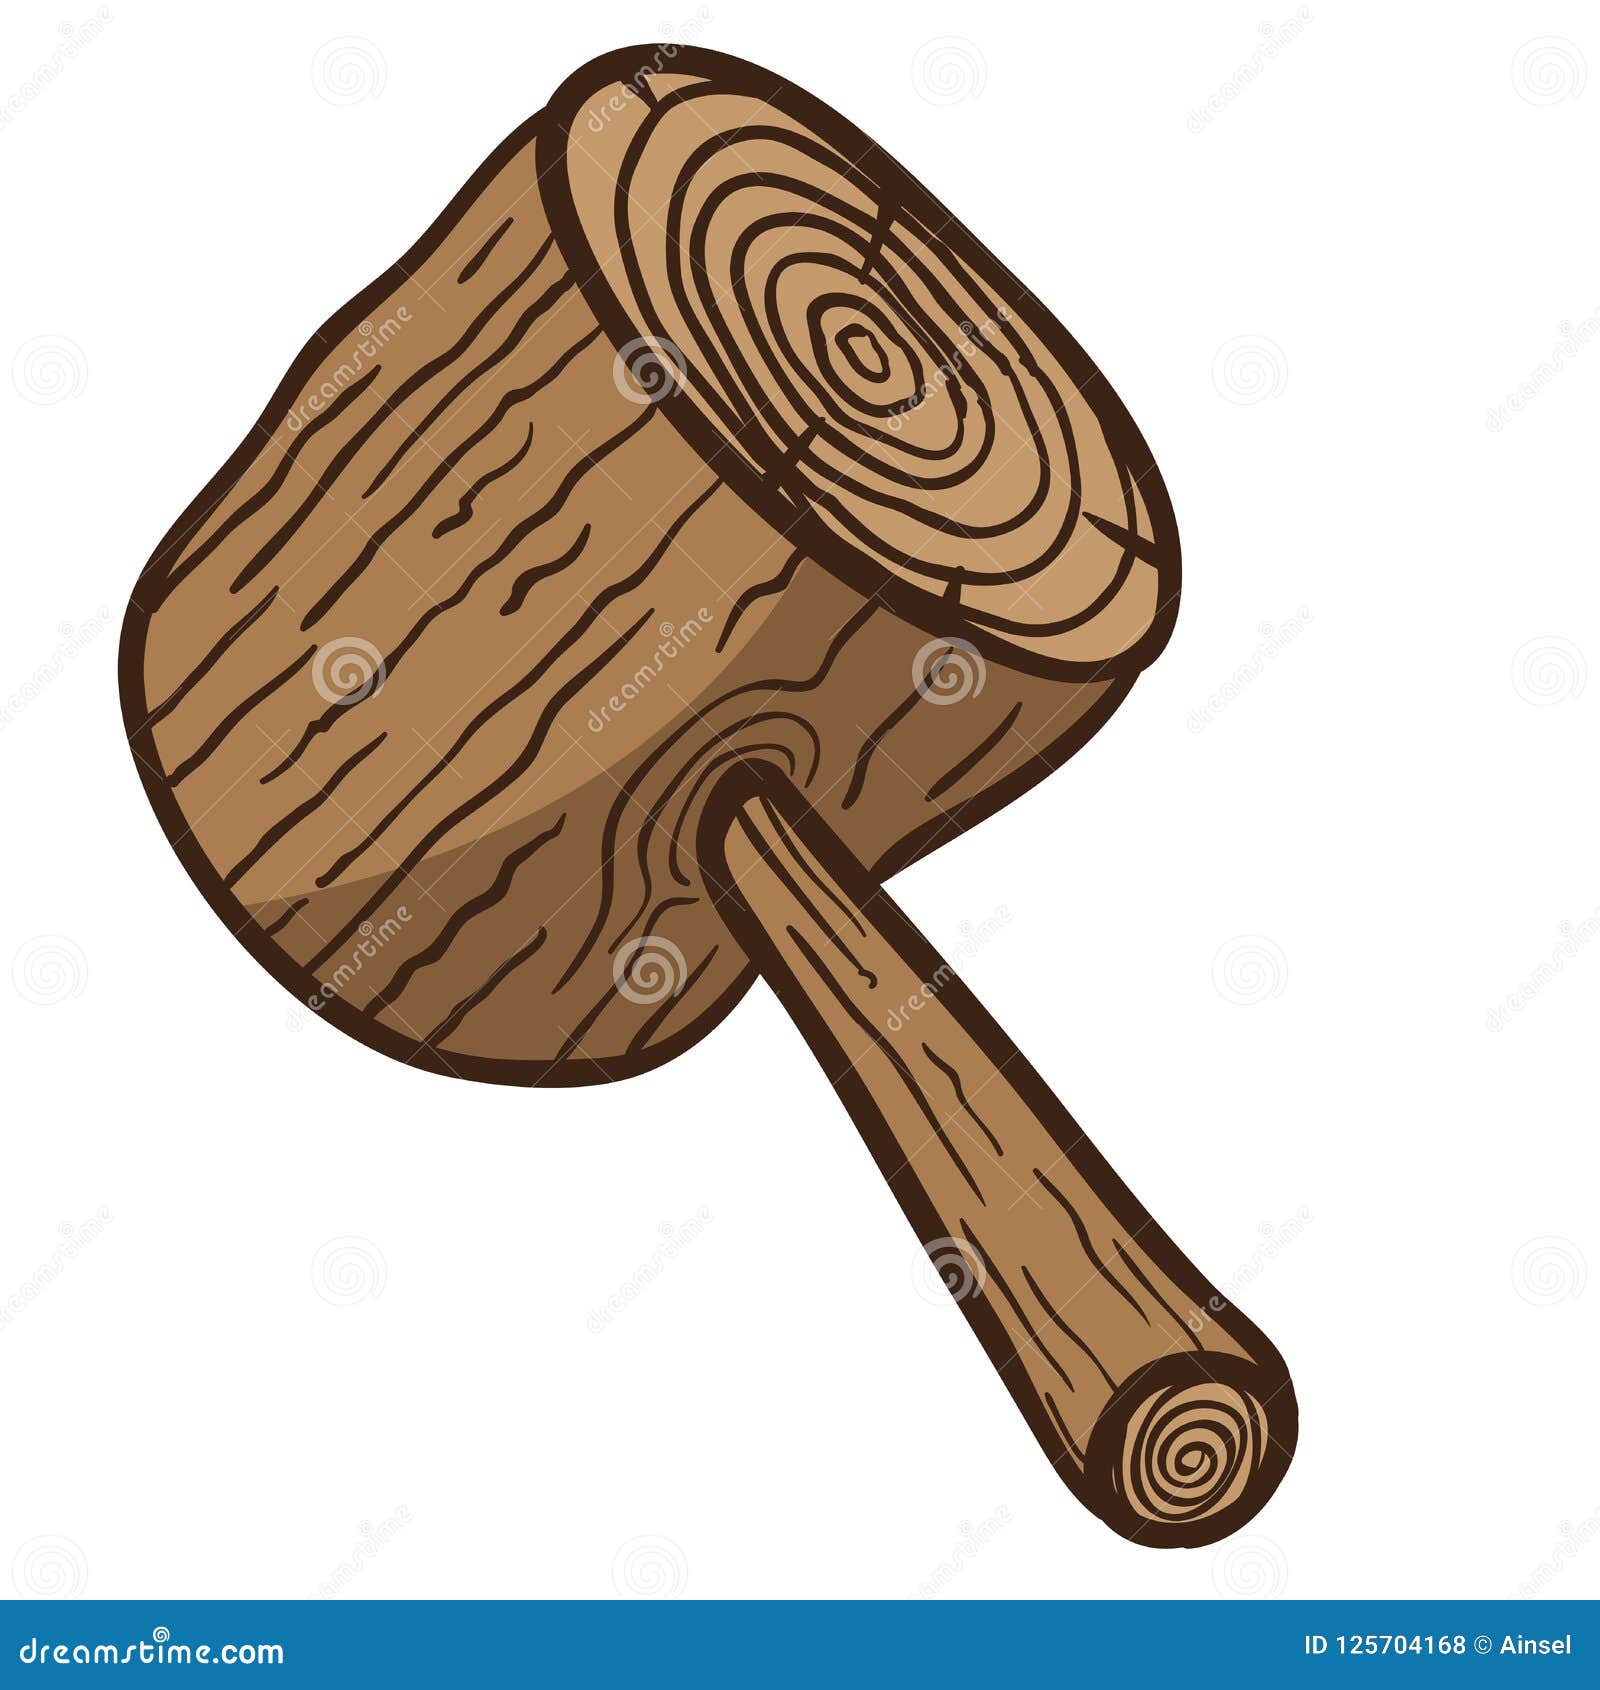 Wooden hammer stock illustration. Illustration of mallet - 125704168